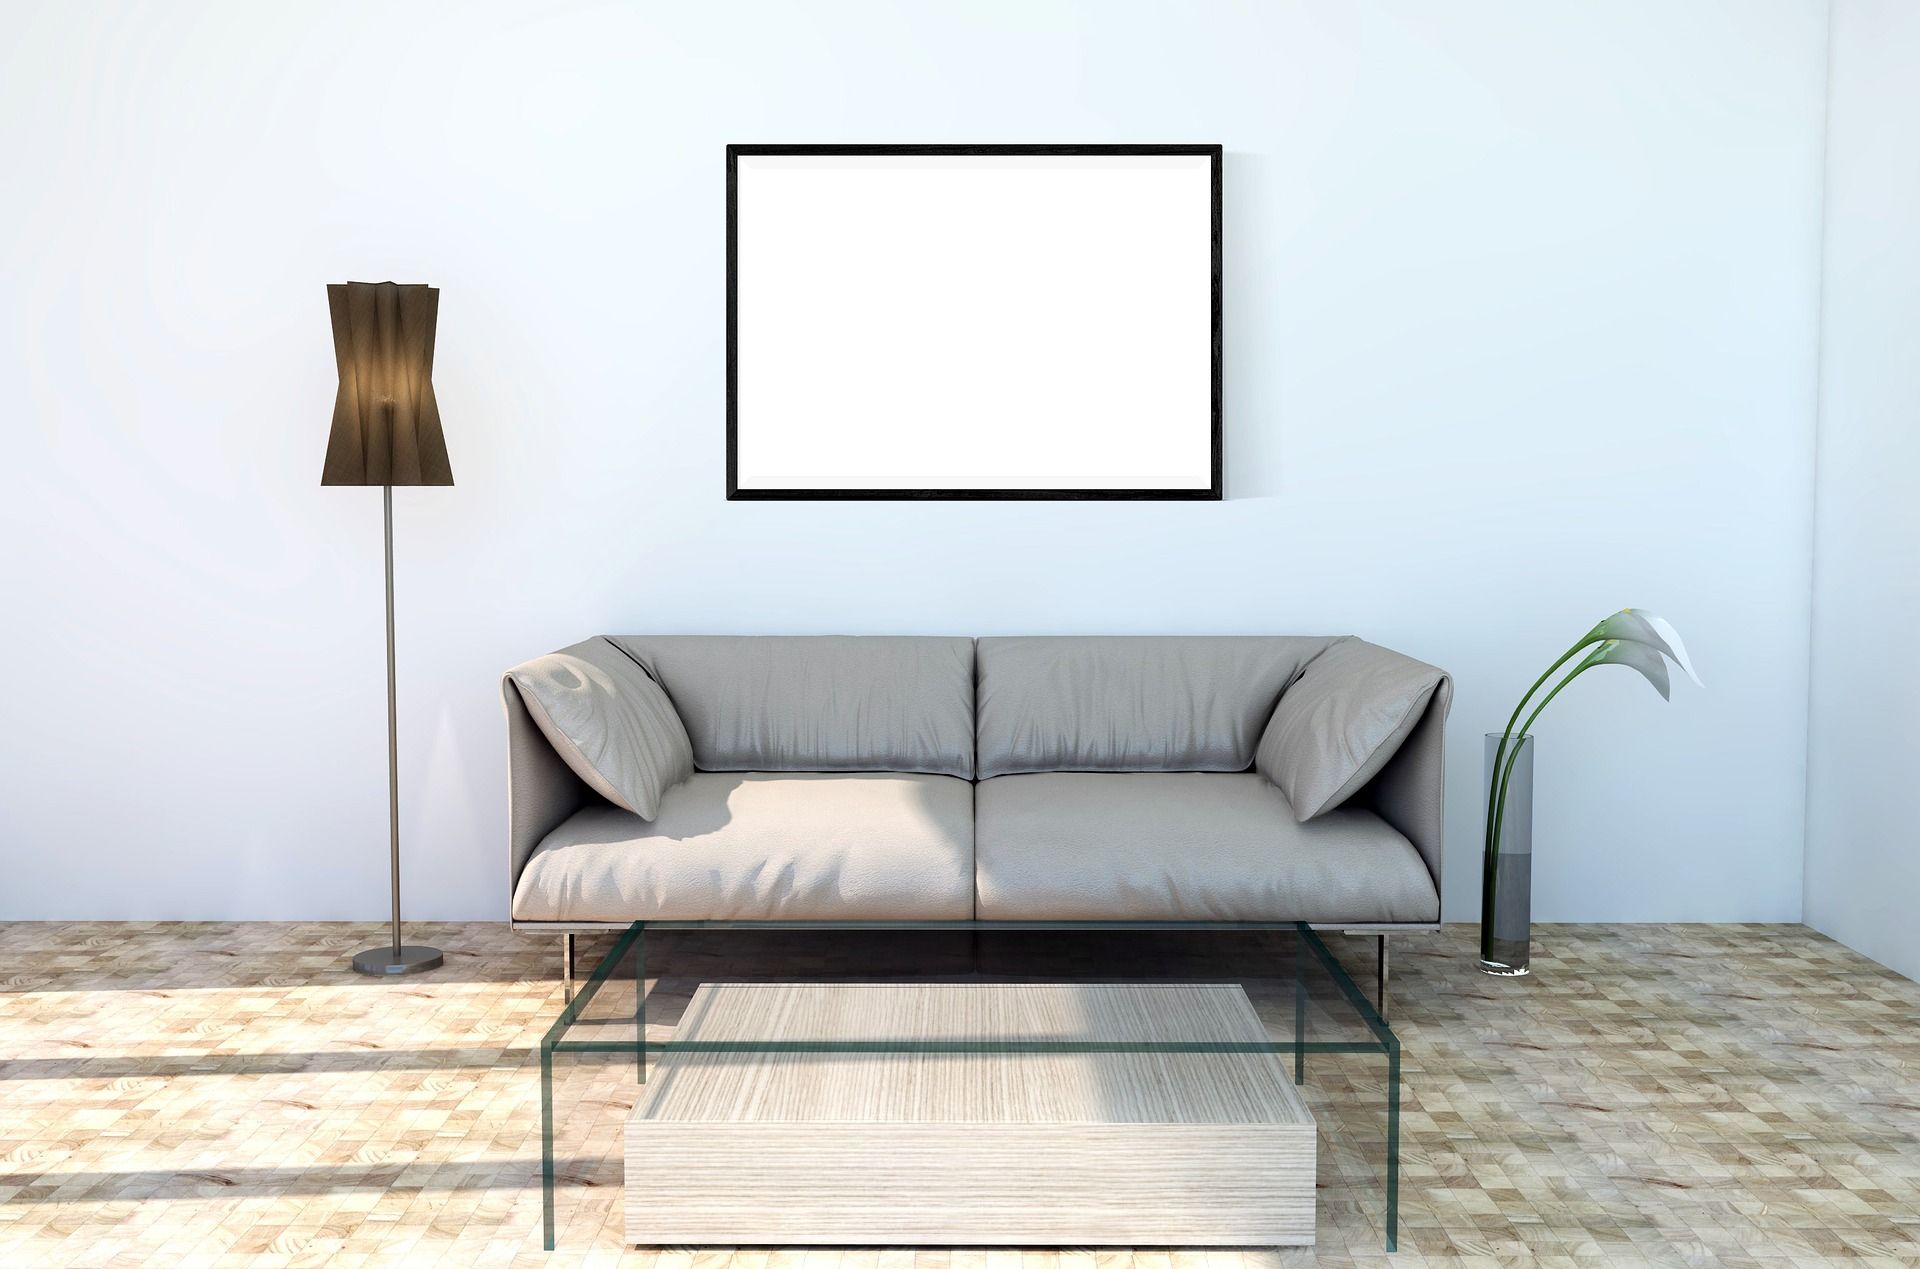 Styl skandynawski salon sofa wyposazenie jak urzadzic aranzacje inspiracje dekoportal